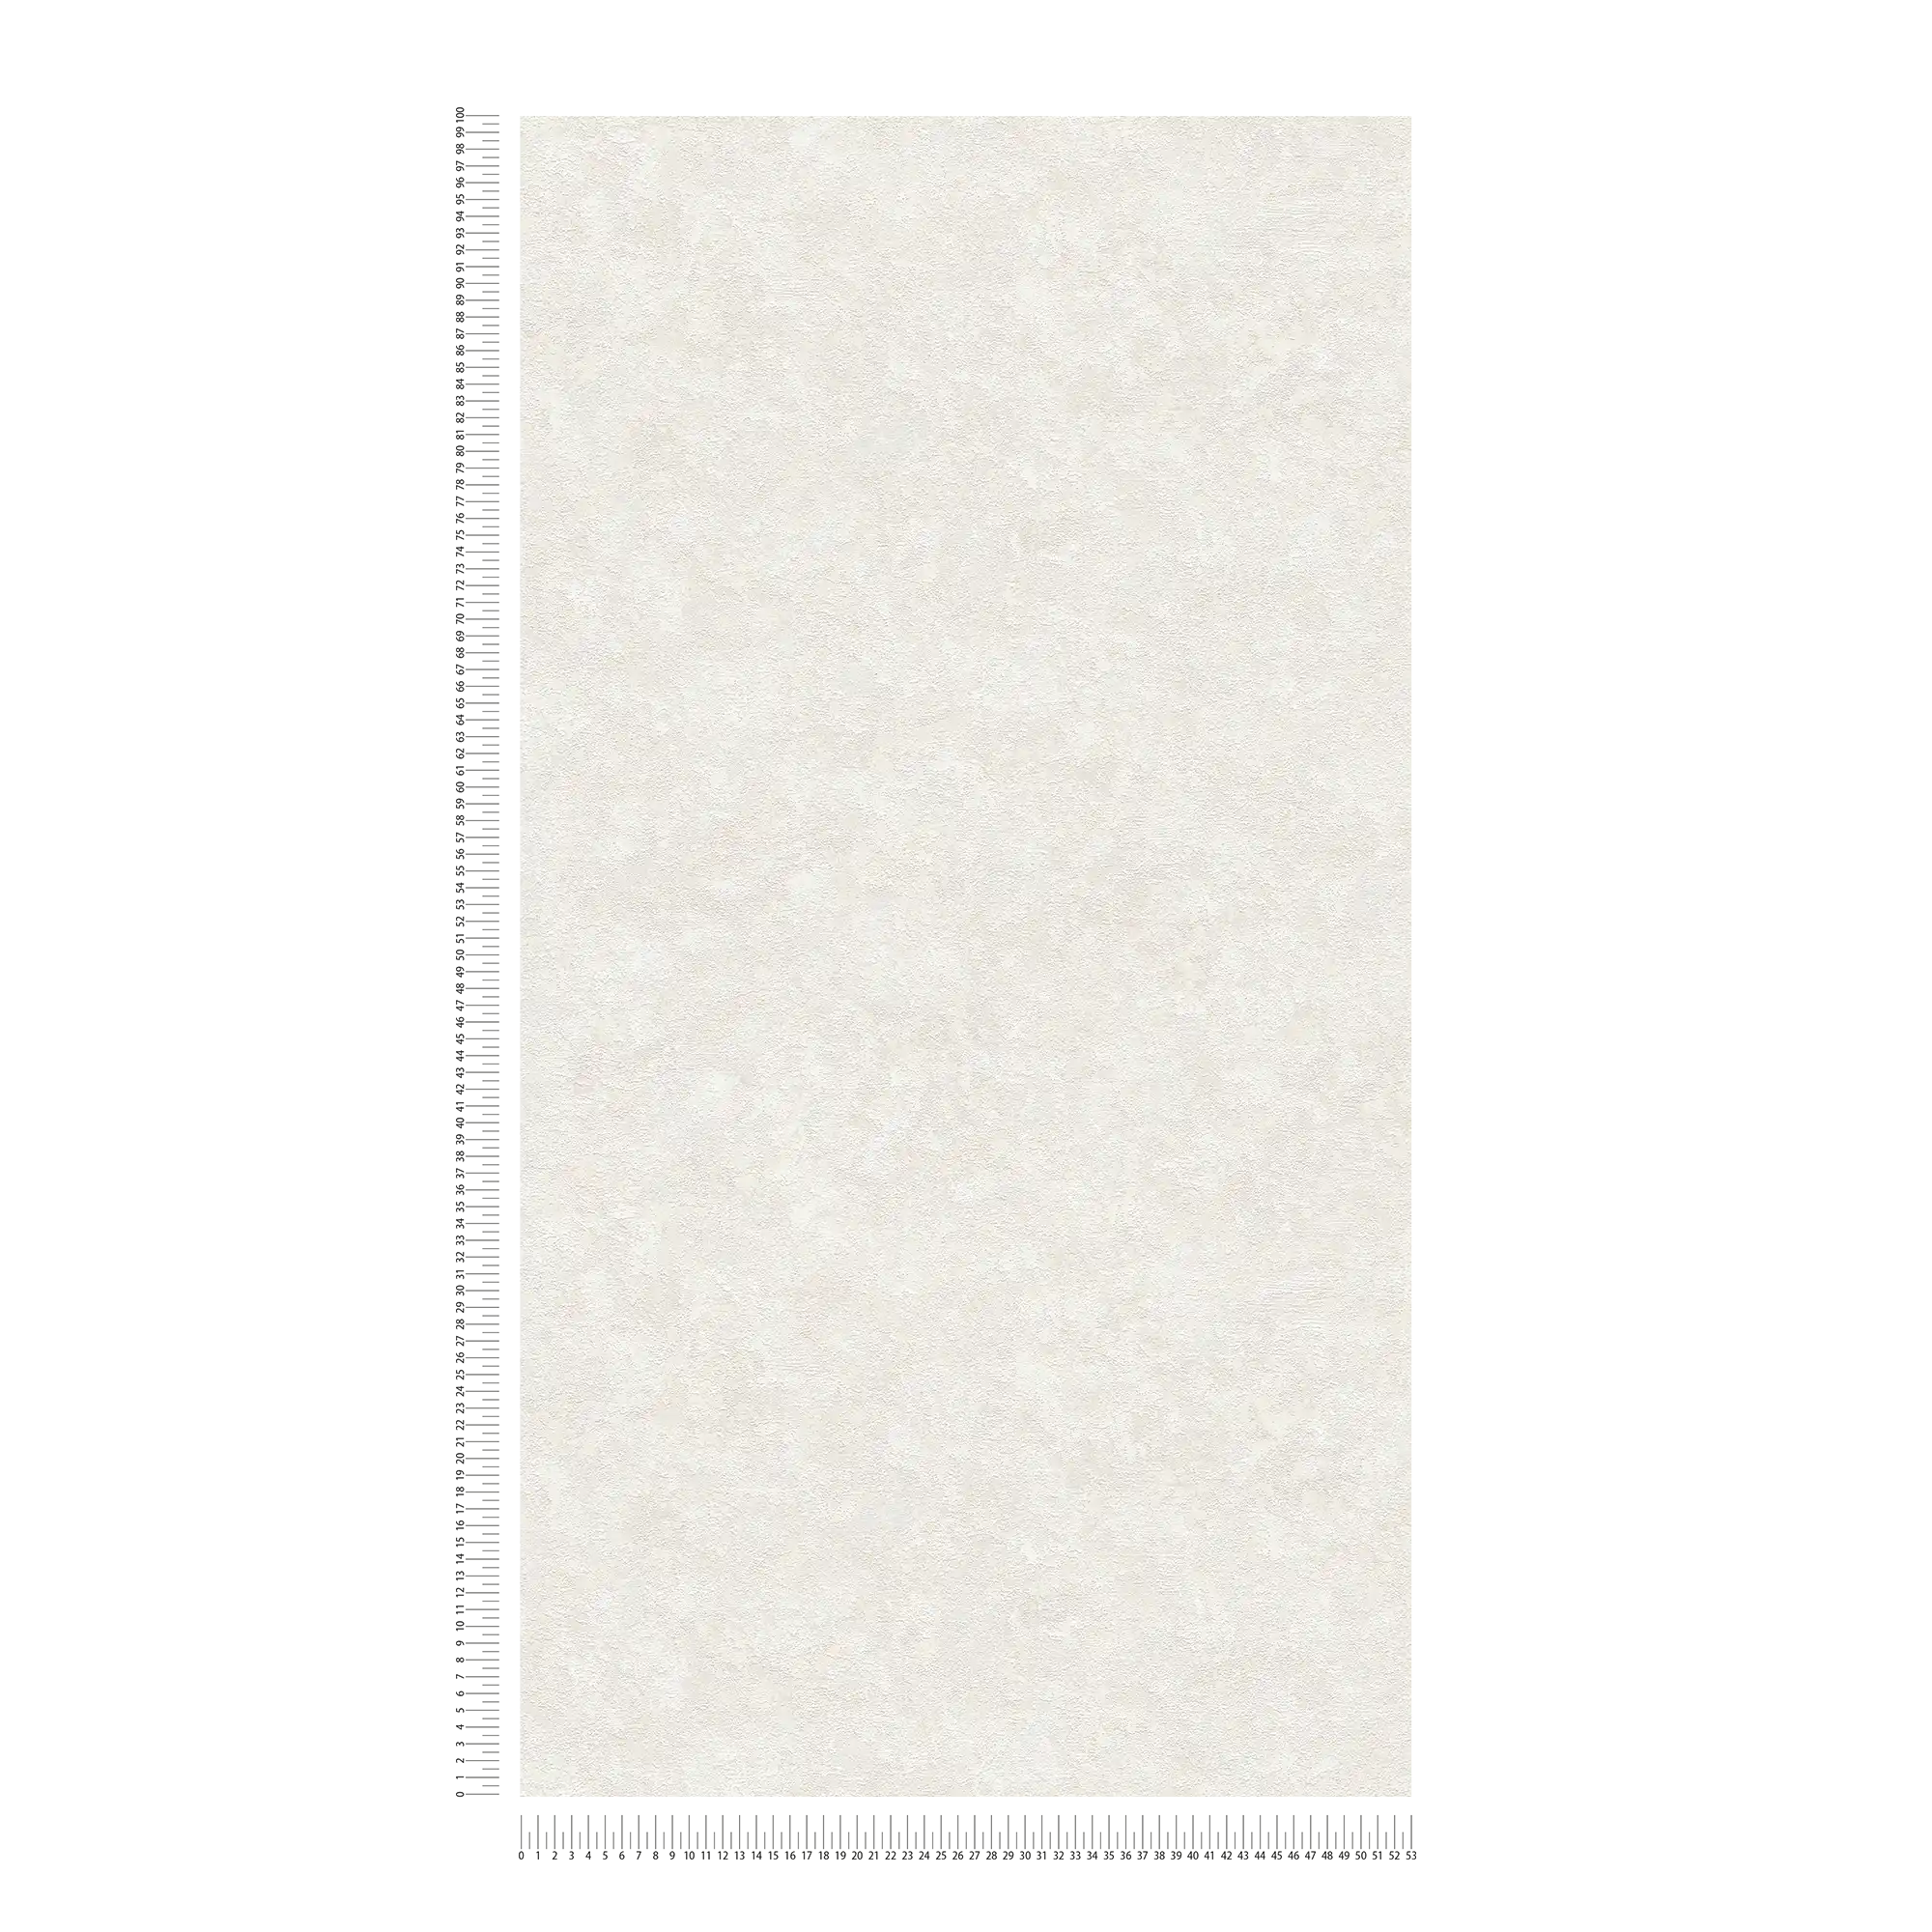             Carta da parati leggera in tessuto non tessuto con motivo strutturato - crema, bianco
        